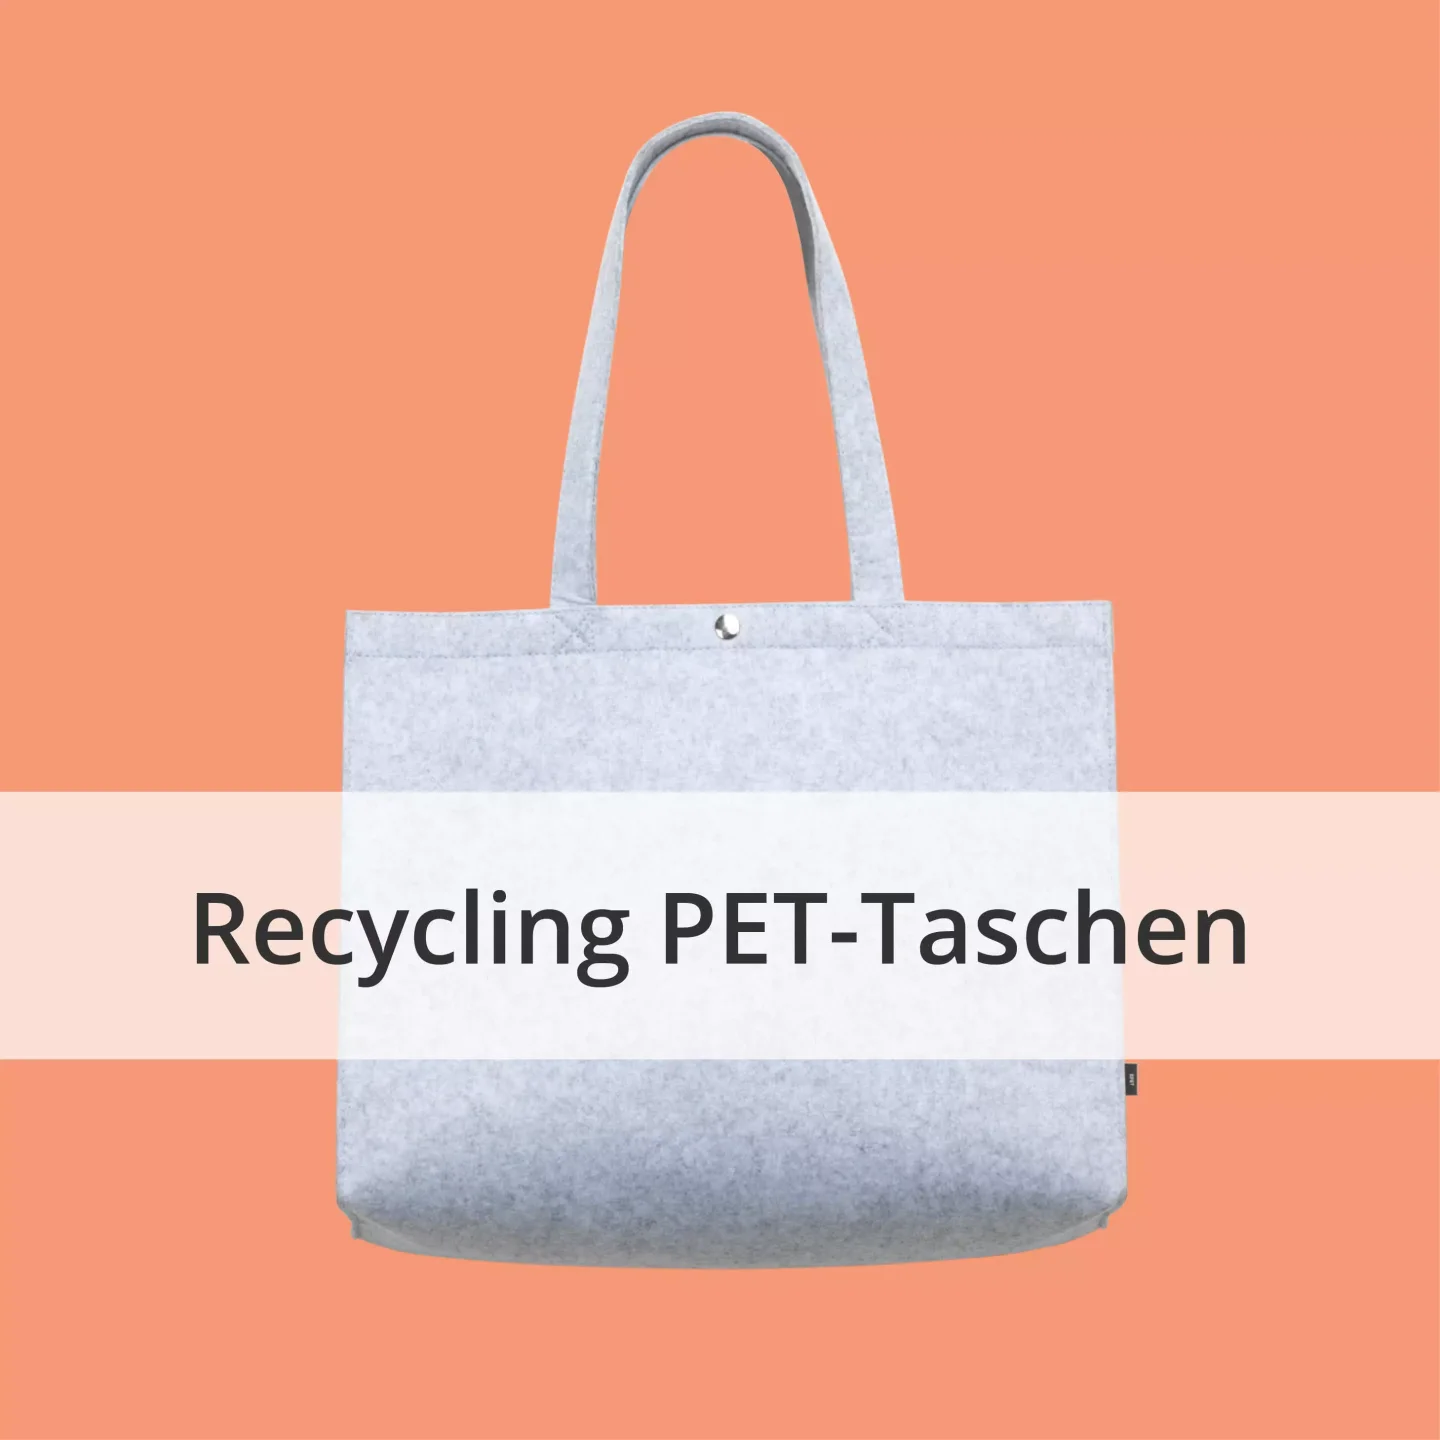 kategorie-recycling-pet-tasche-filztaschen-recycling-papiertaschen-recycling-baumwolltaschen